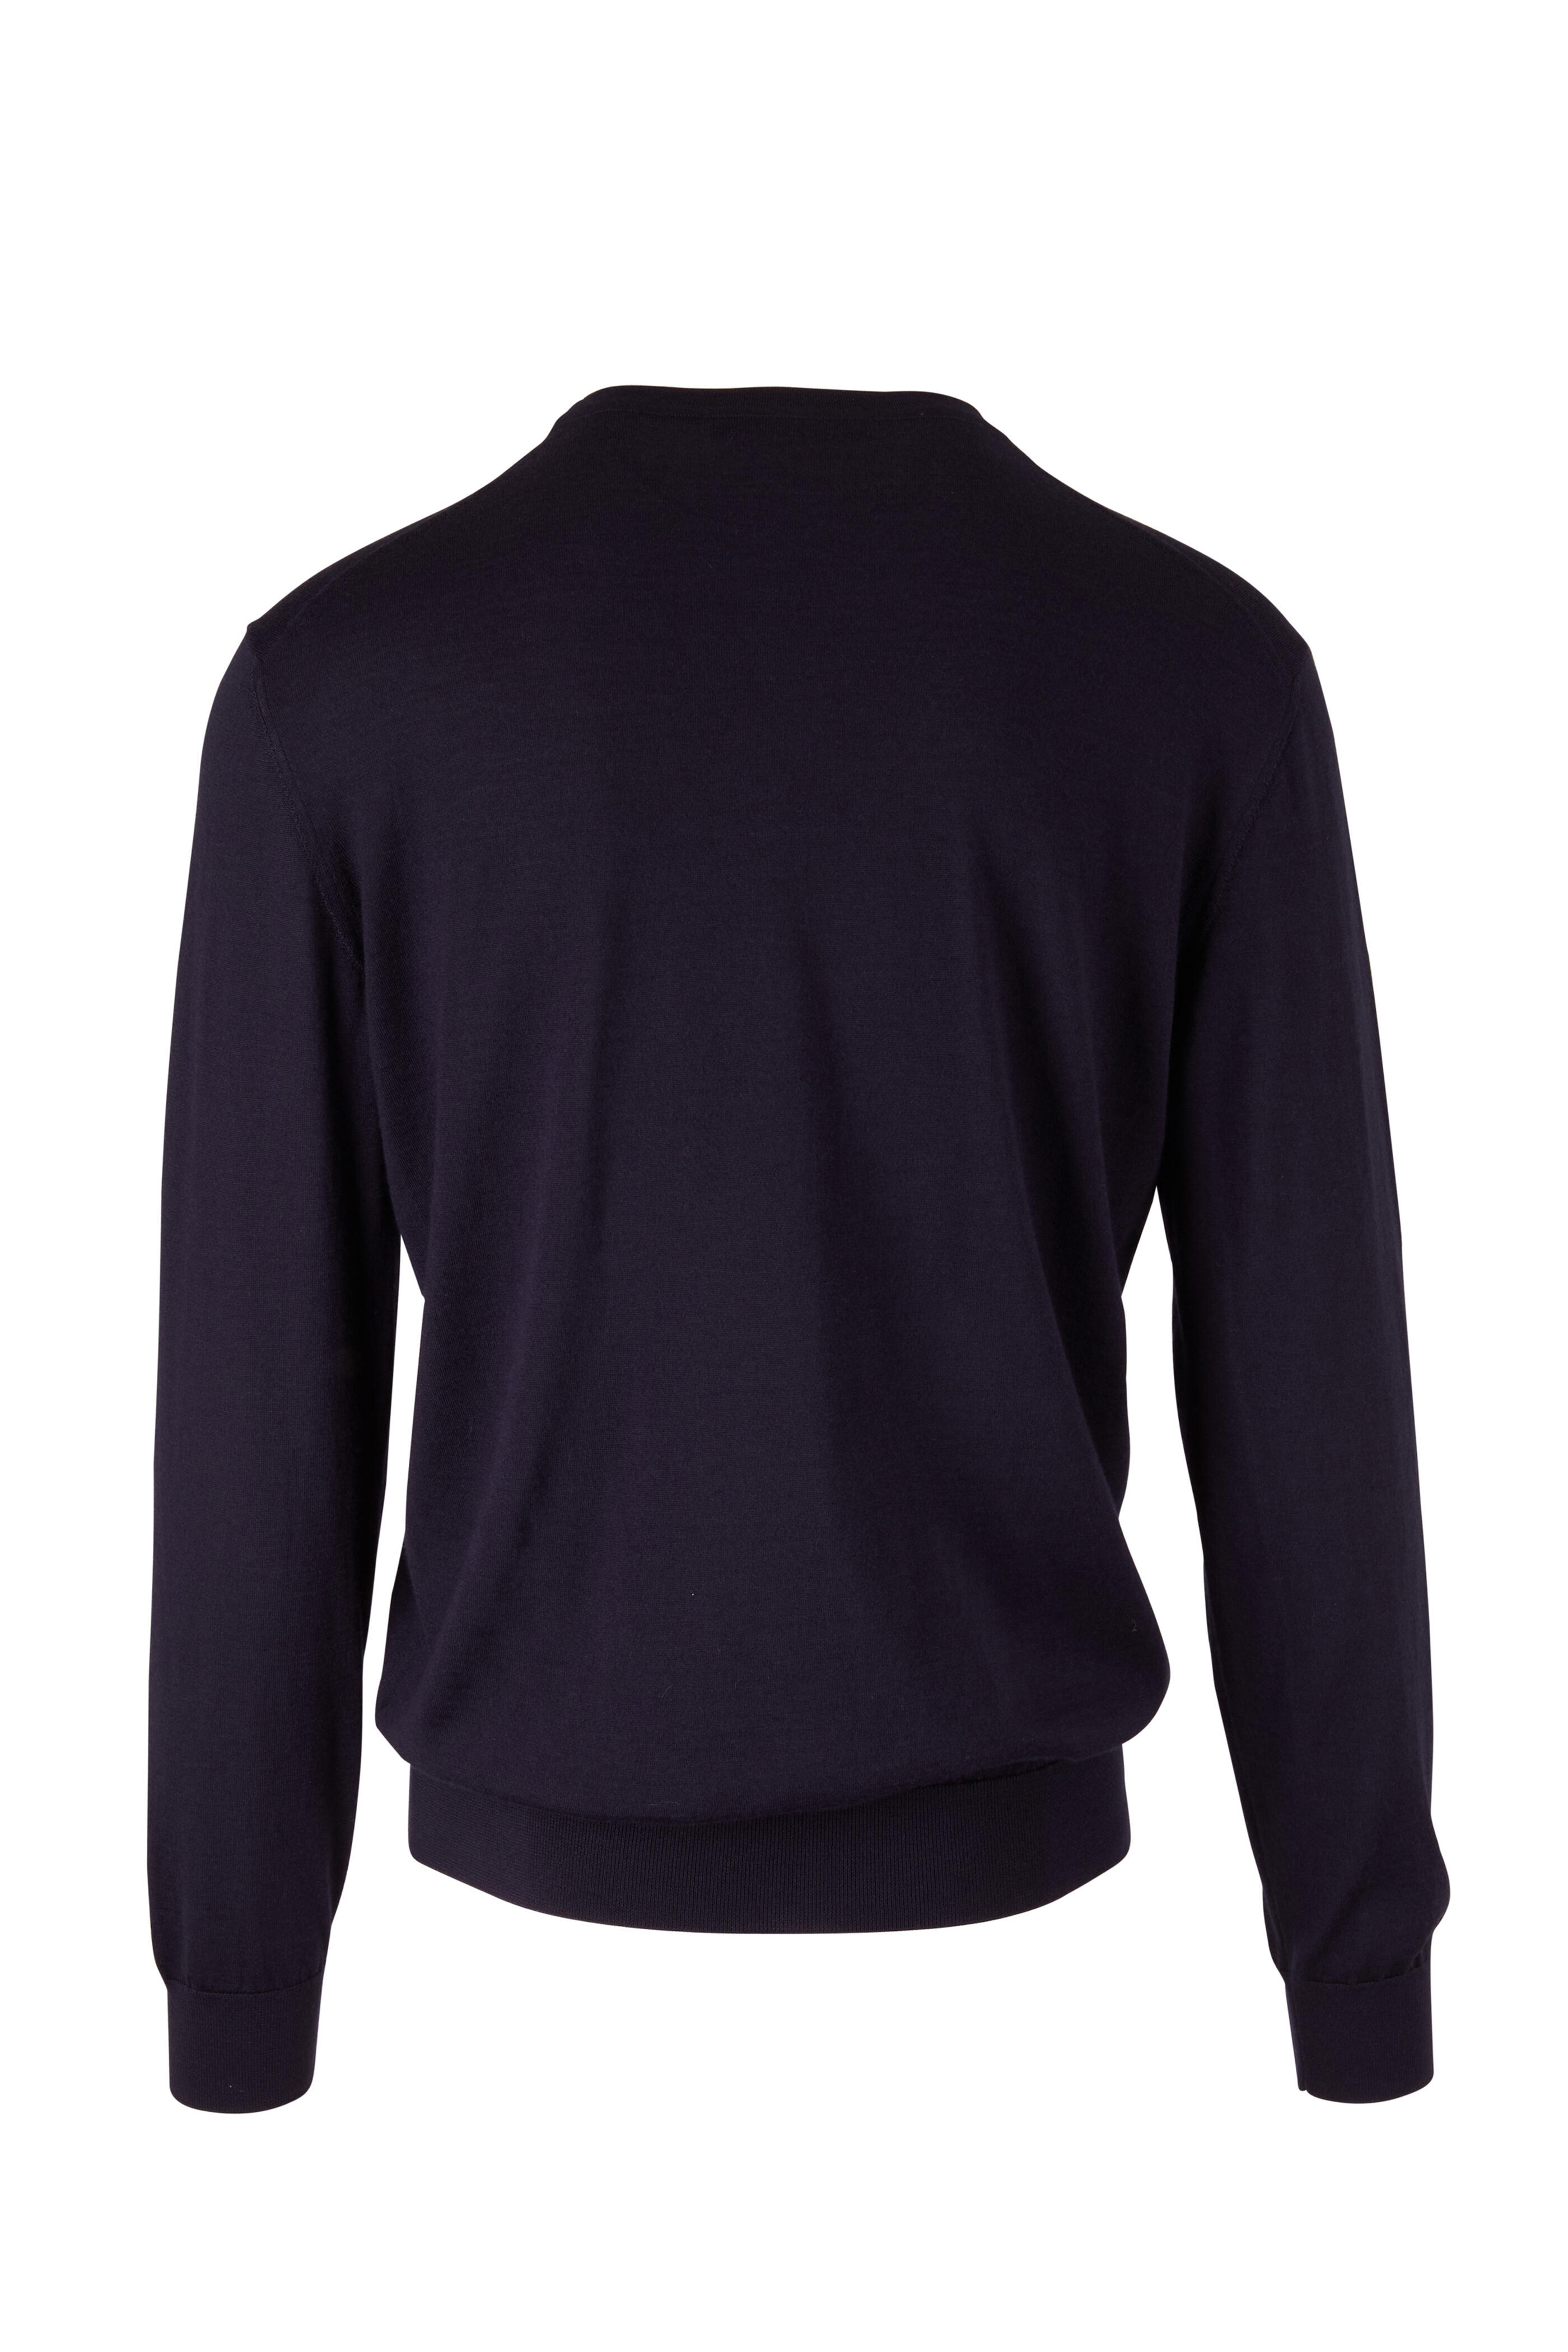 Zegna - Navy Cashmere & Silk Crewneck Pullover | Mitchell Stores